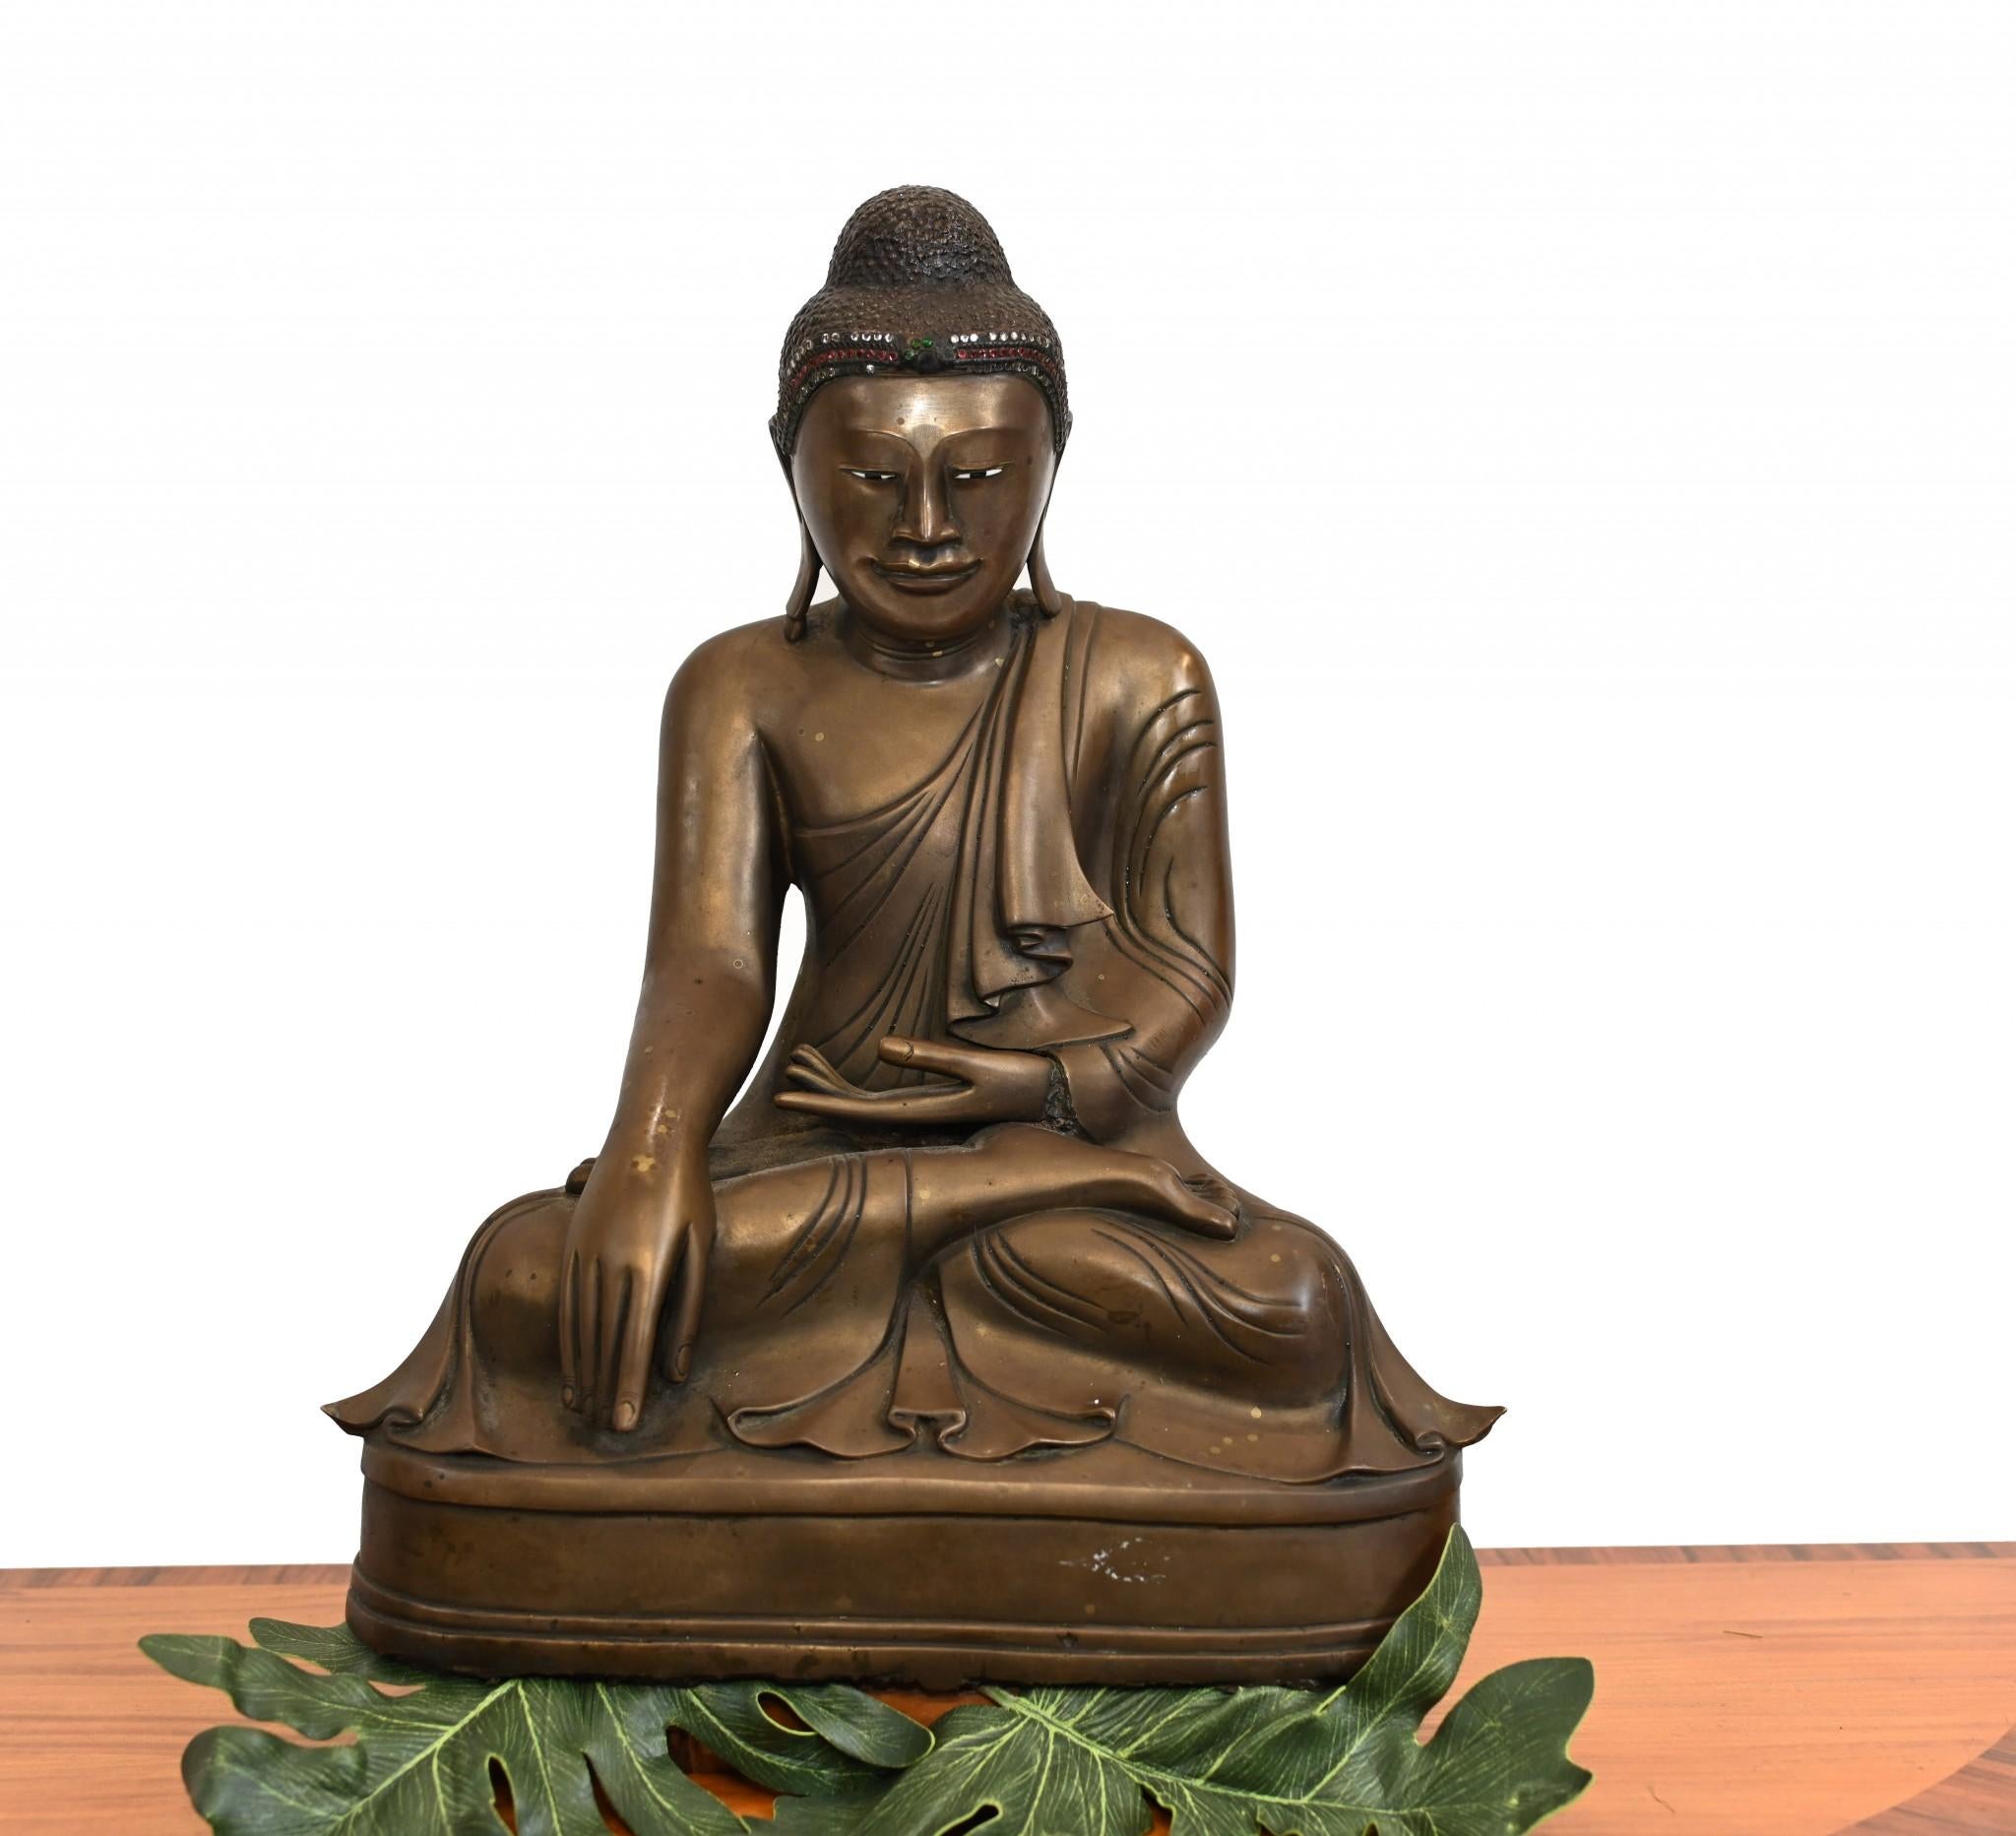 Wunderschöne meditierende Buddha-Statue aus Bronze 
Große Guss sehr solide mit schöner Patina
Natürlich kann Bronze im Freien leben, ohne zu rosten.
Angeboten in großer Form bereit für den Heimgebrauch sofort
Wir liefern in jeden Winkel der